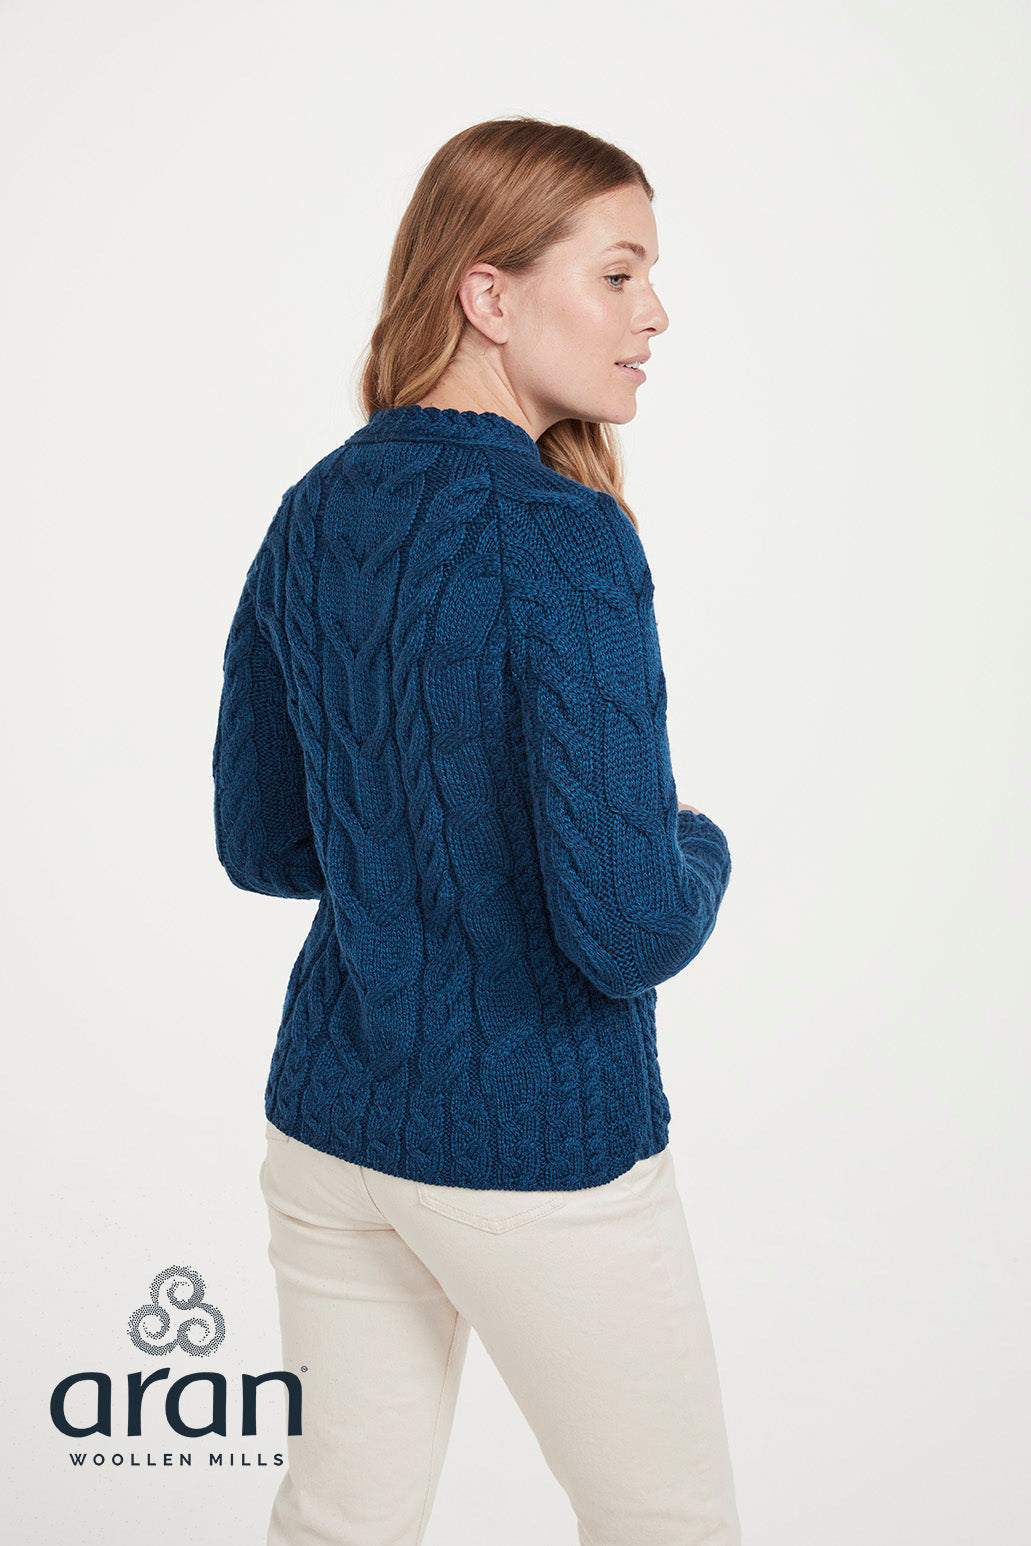 Aran Woollen Mills – B951 | Wollpullover für Damen